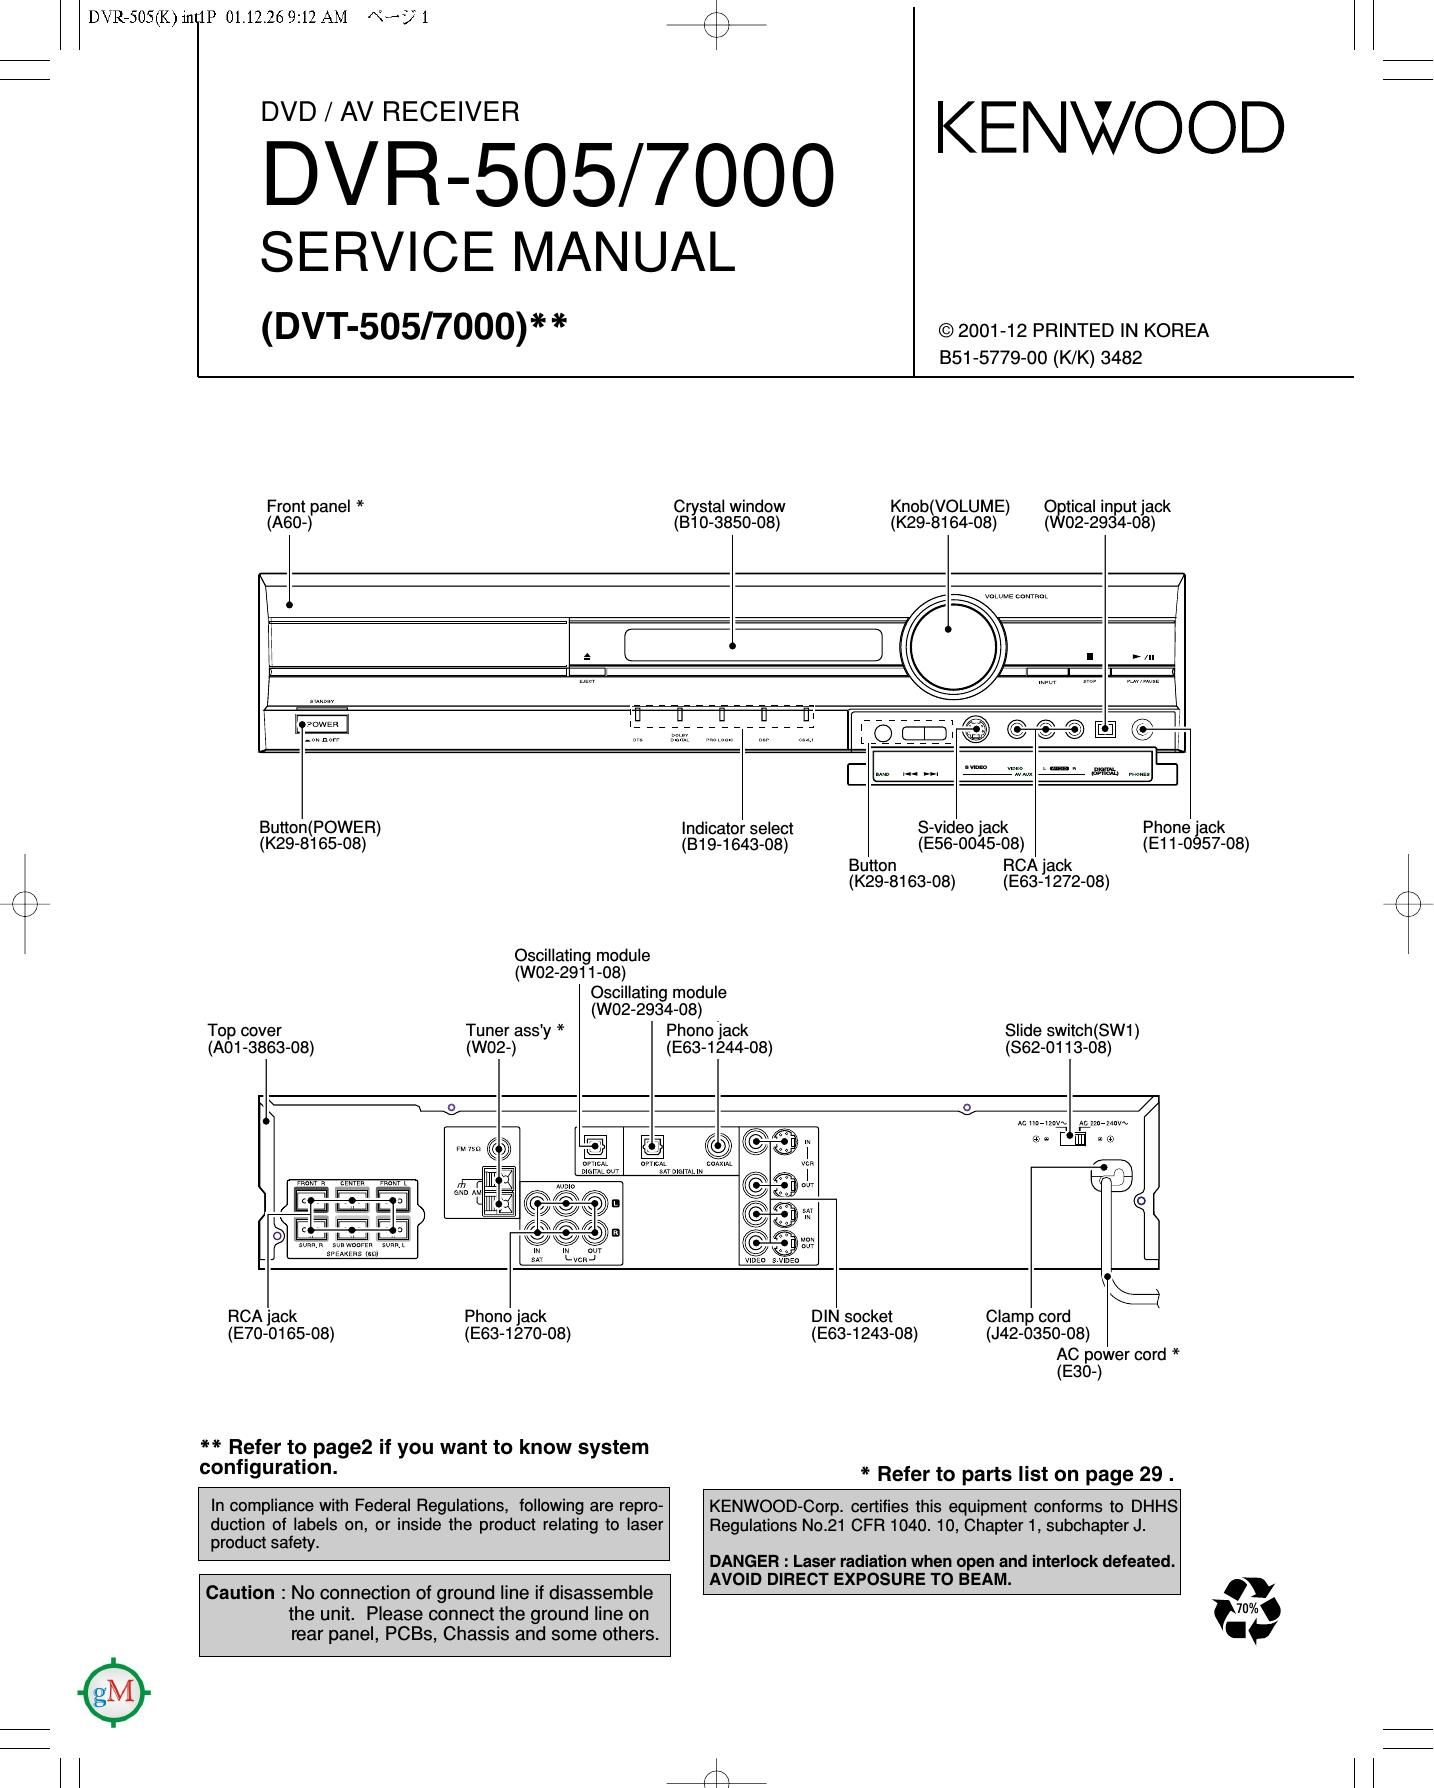 Kenwood DVR 505 Service Manual